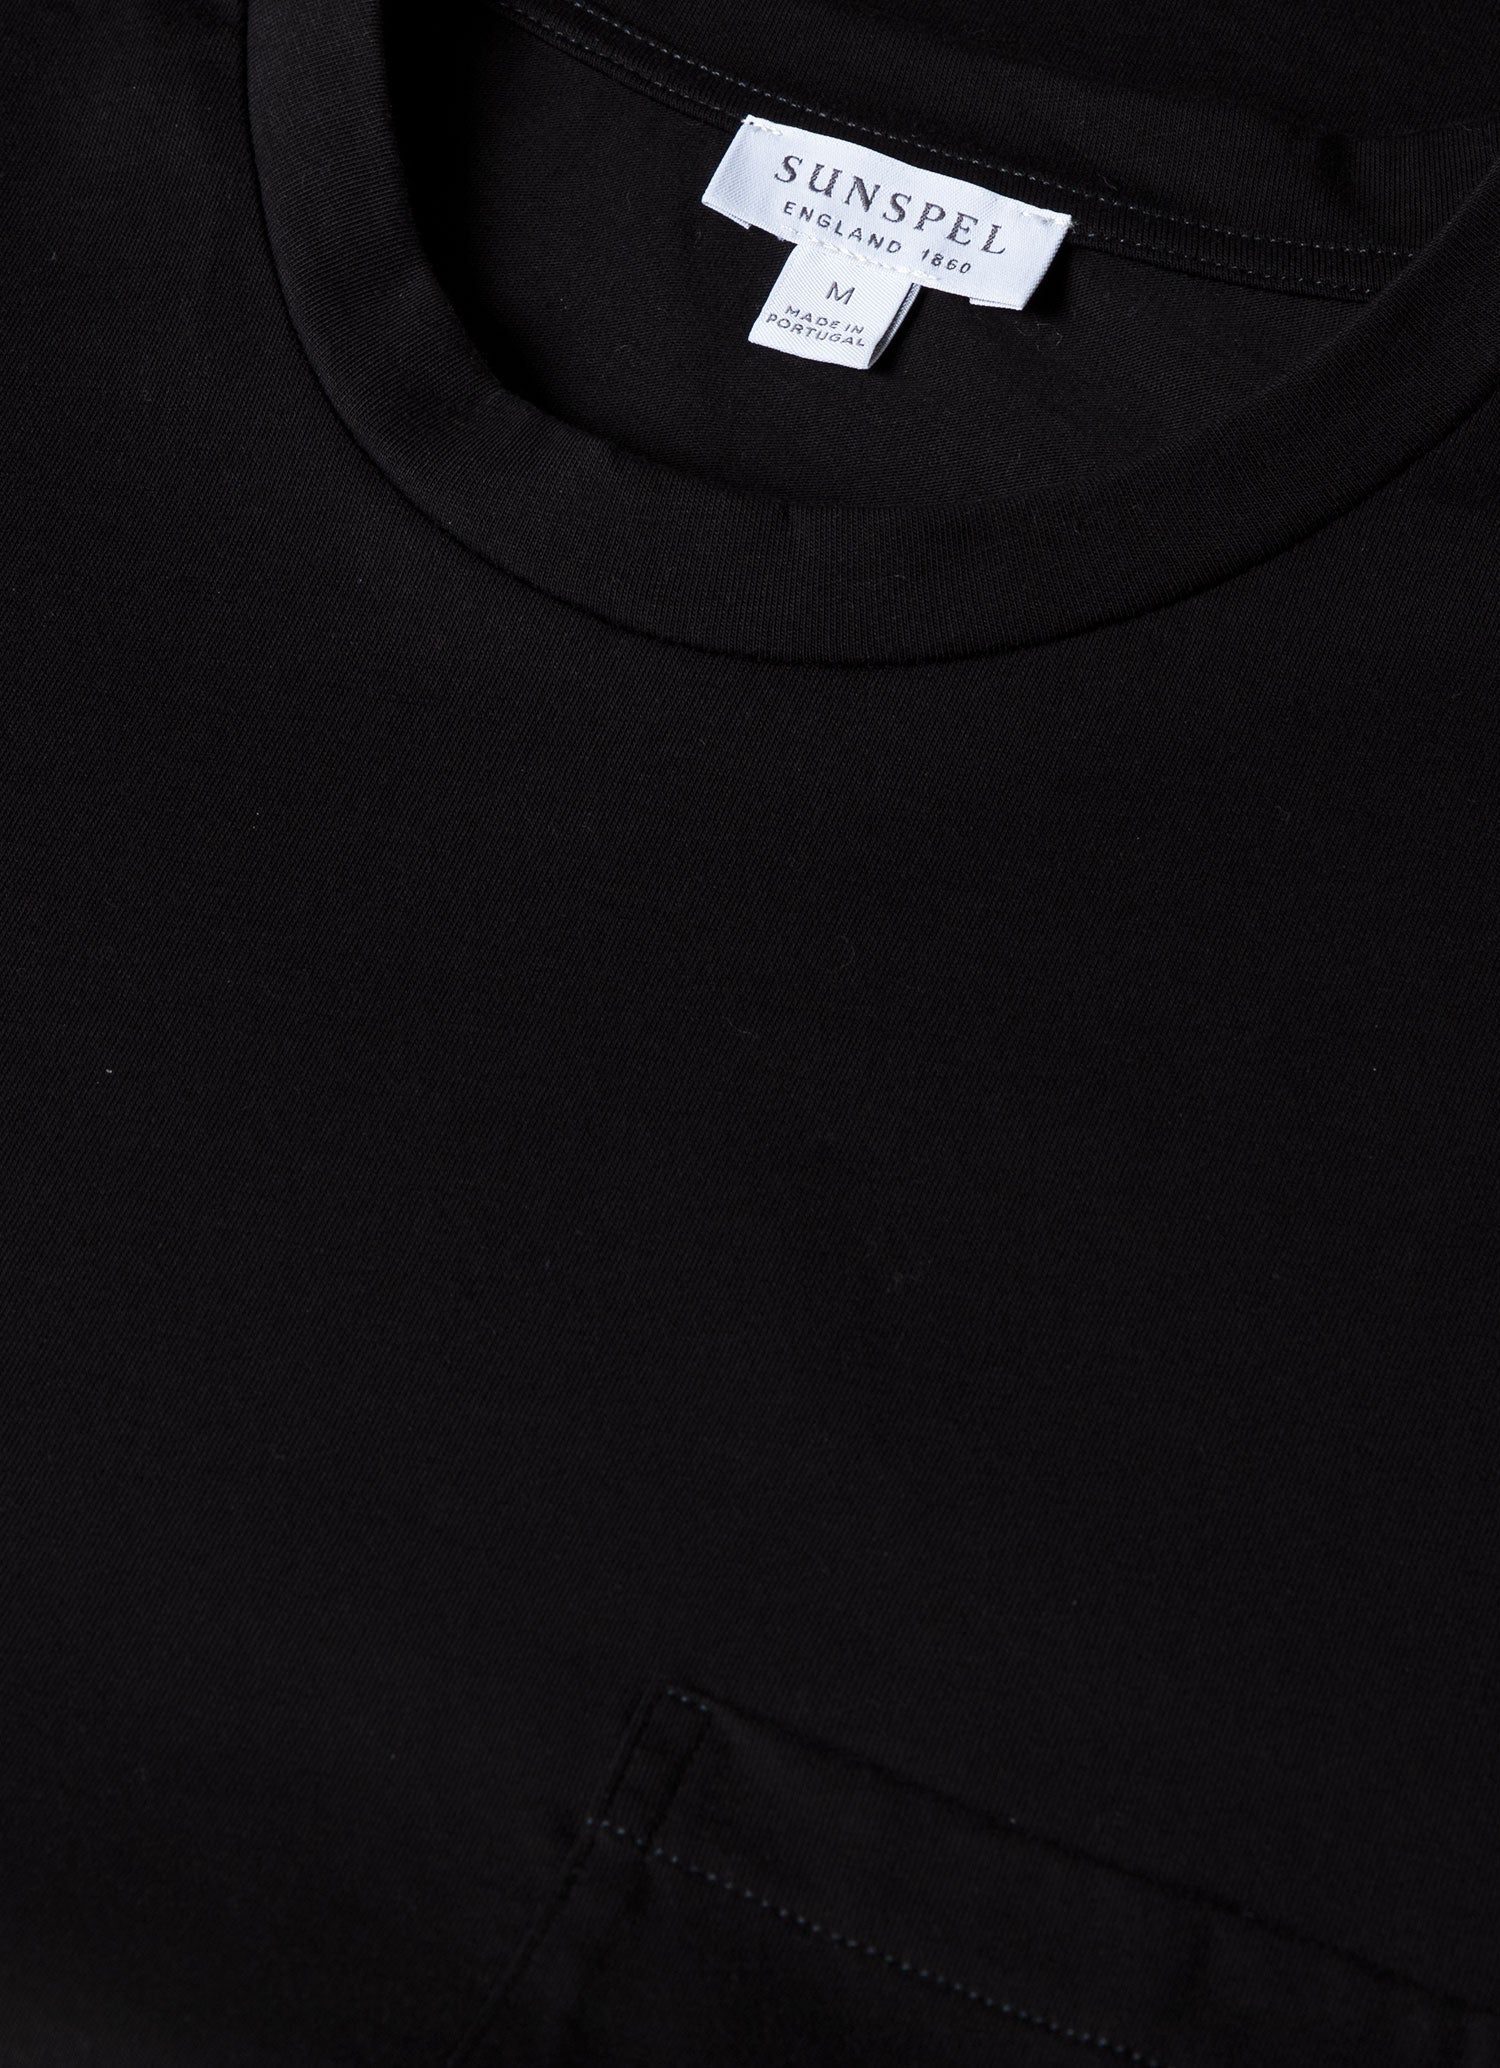 Men's Riviera Pocket T-shirt in Black